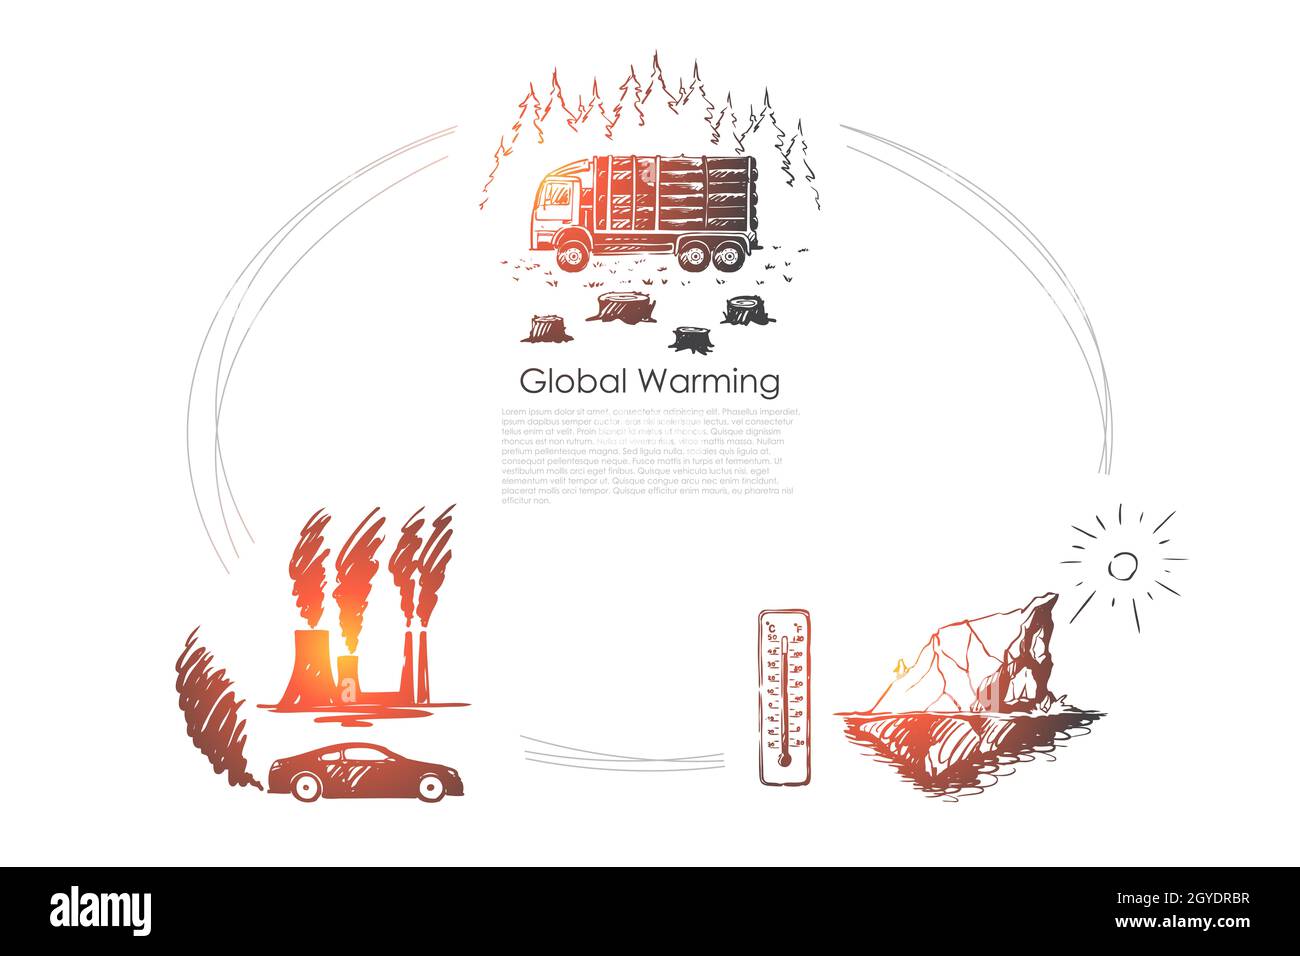 Globale Erwärmung - Fabrik Verschmutzung, Eisberg Schmelzen, Schneiden von Bäumen Vektor-Konzept gesetzt. Von Hand gezeichnete Skizze isolierte Illustration Stockfoto